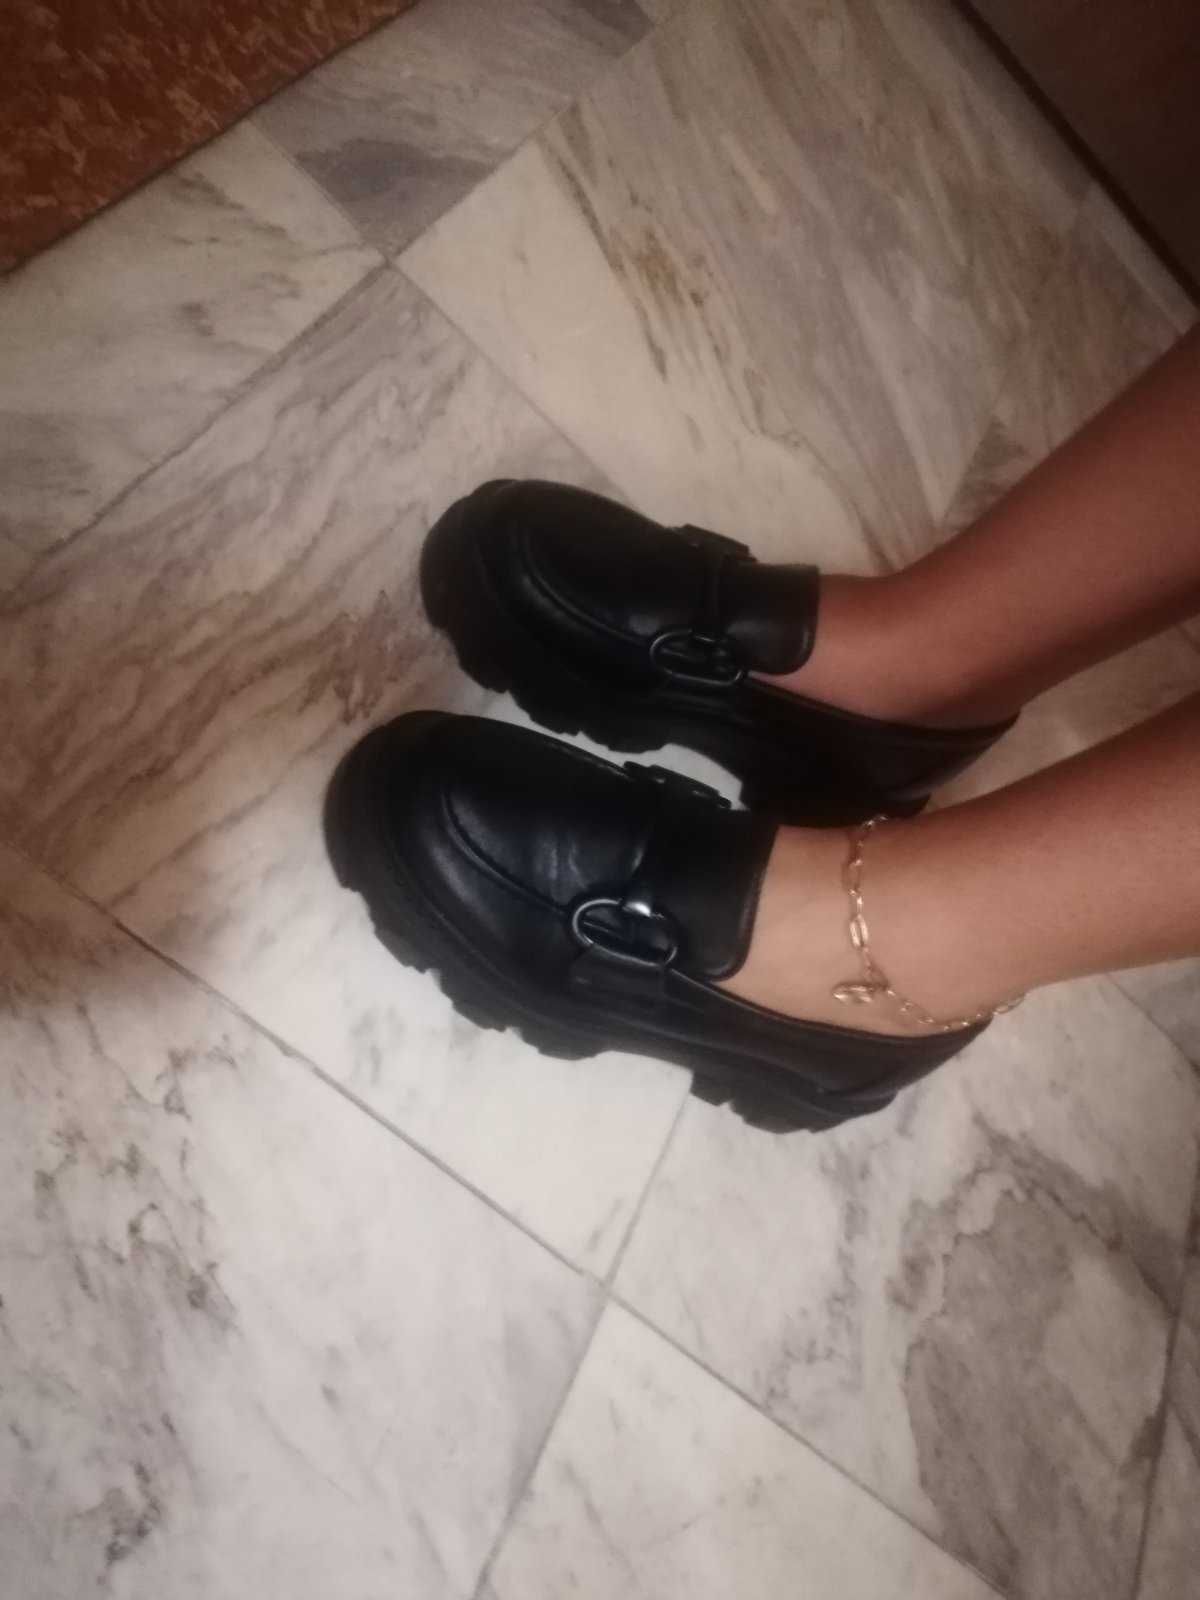 Дамски обувки черни